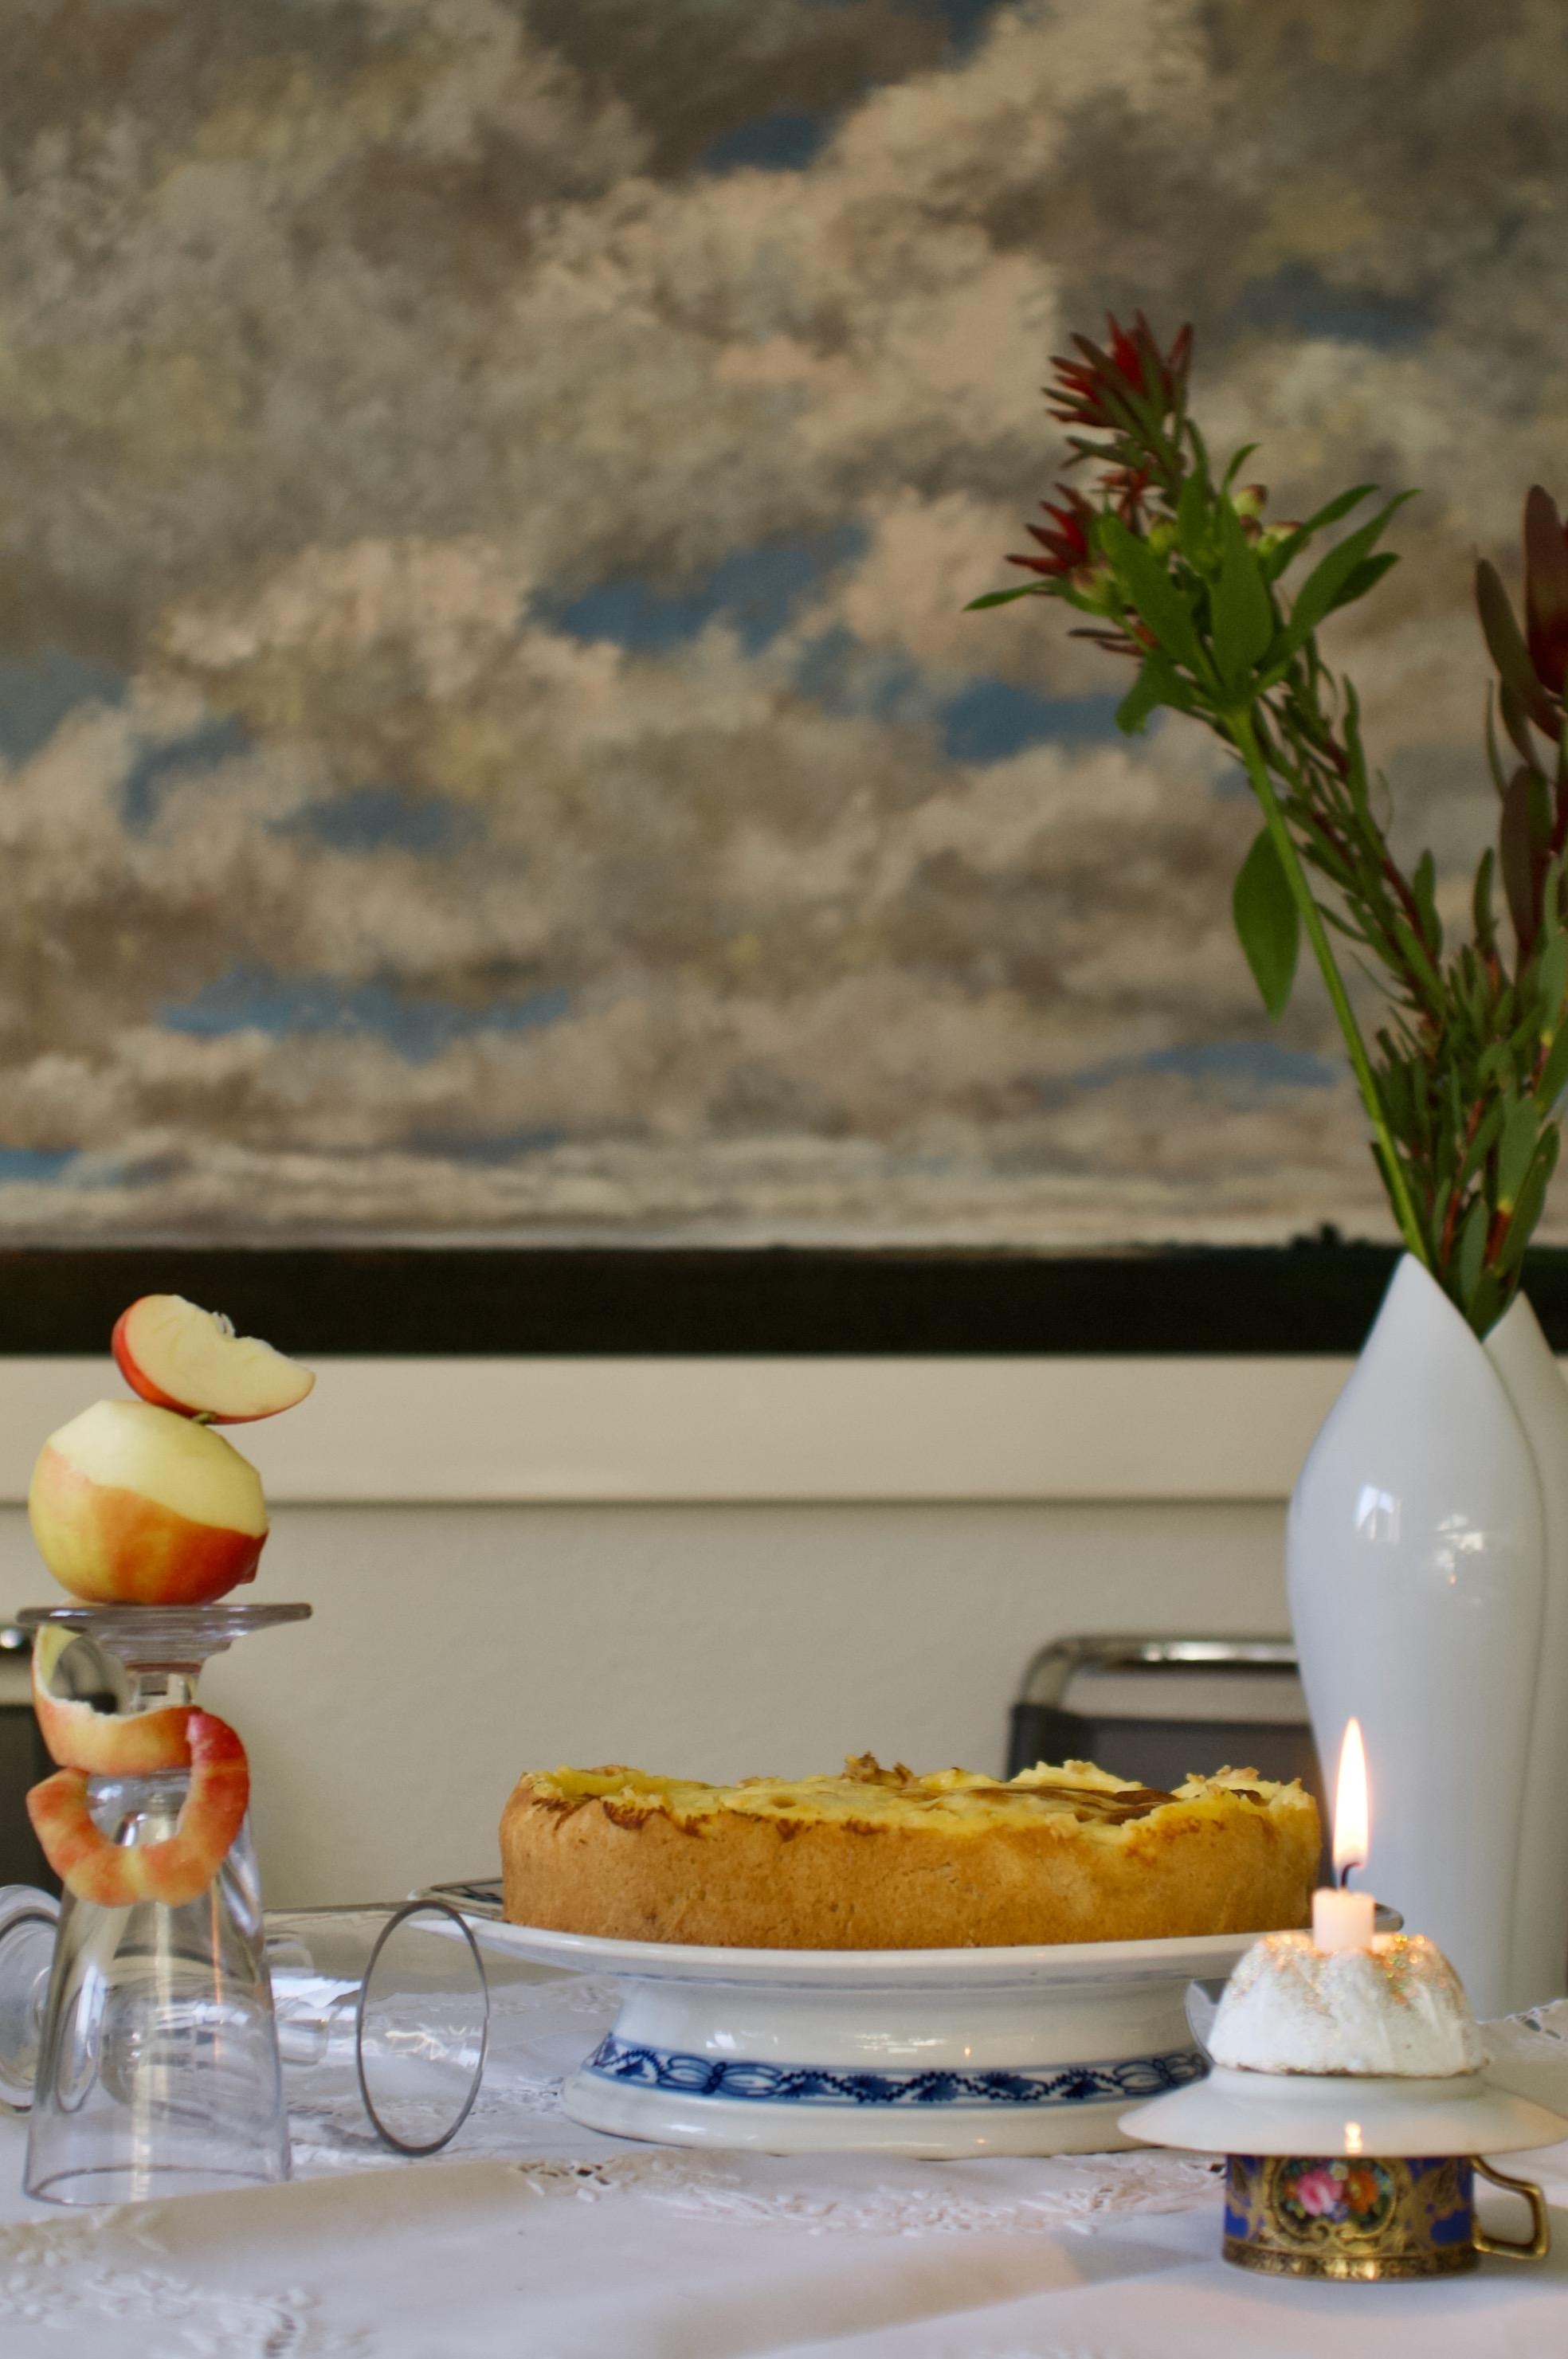 #apfelkuchen 🍎🍏🧁🍏🍎
Im Herbst mein liebster Kuchen 
#lieblingsgericht